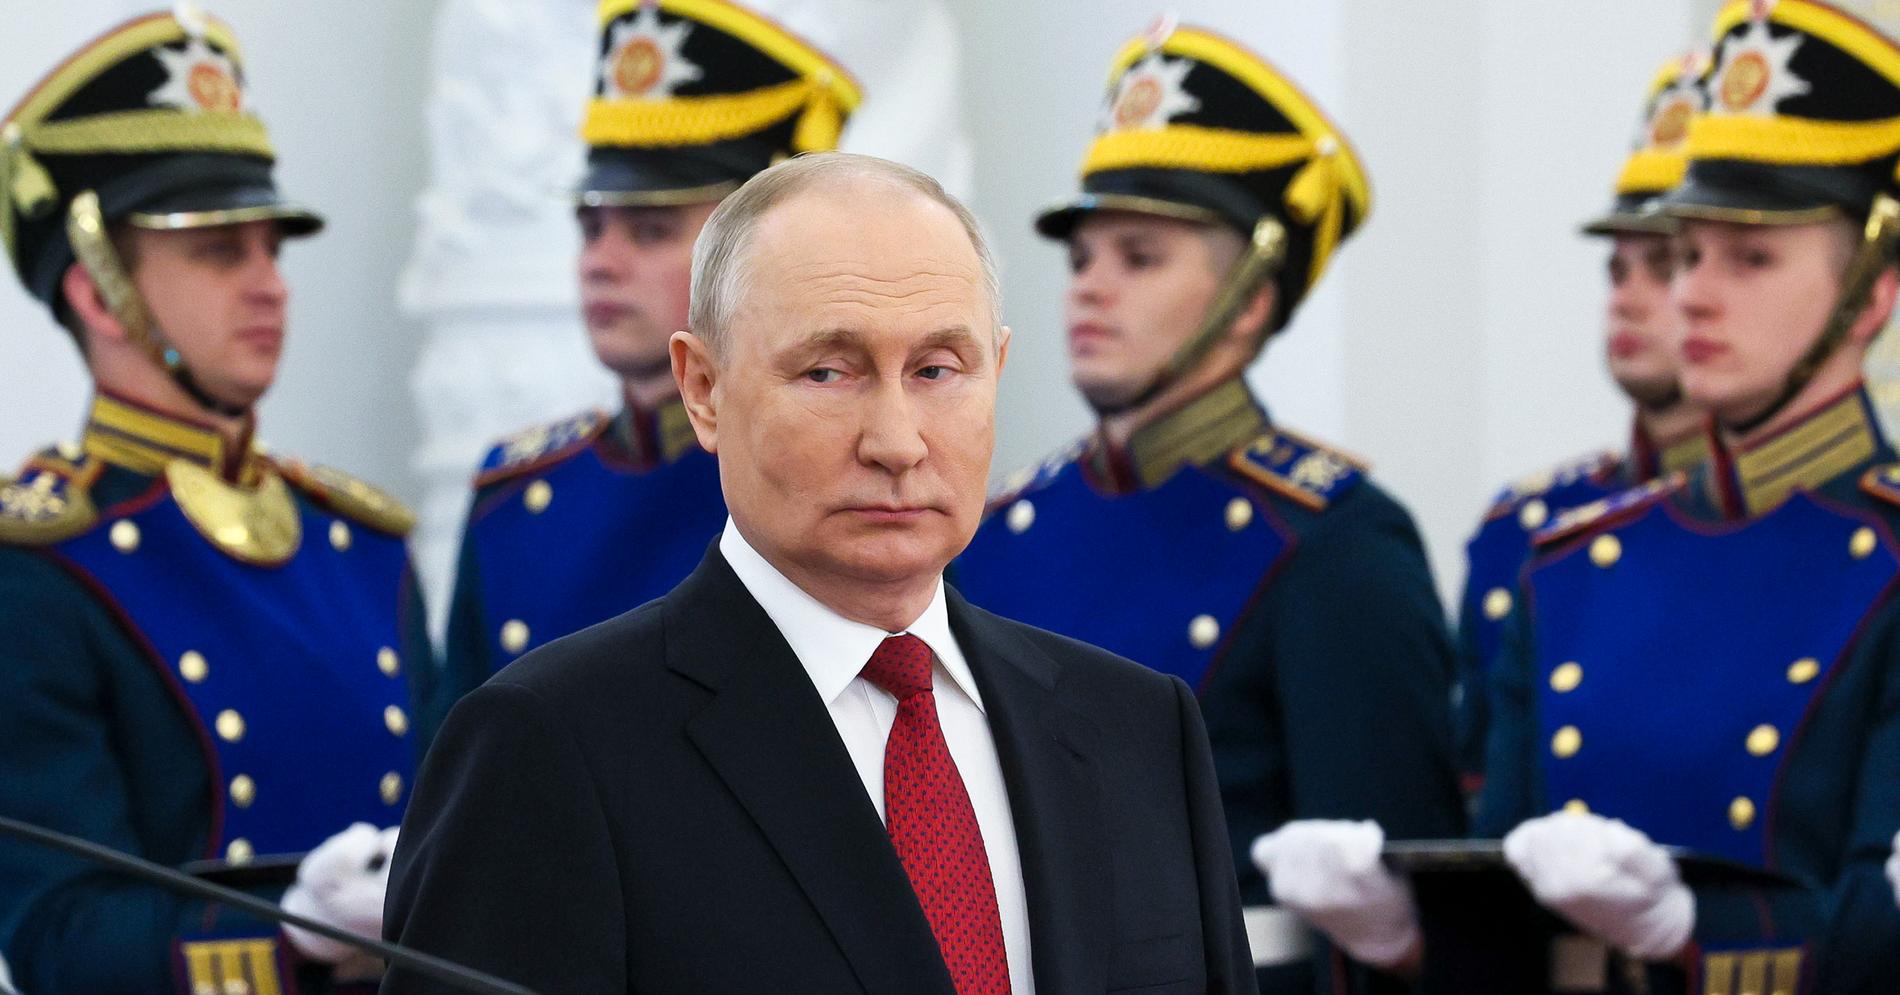 Putin är en måttlig alkoholkonsument och gillar inte fyllkajor. Under kriget har supandet i Kreml ökat, enligt källor.